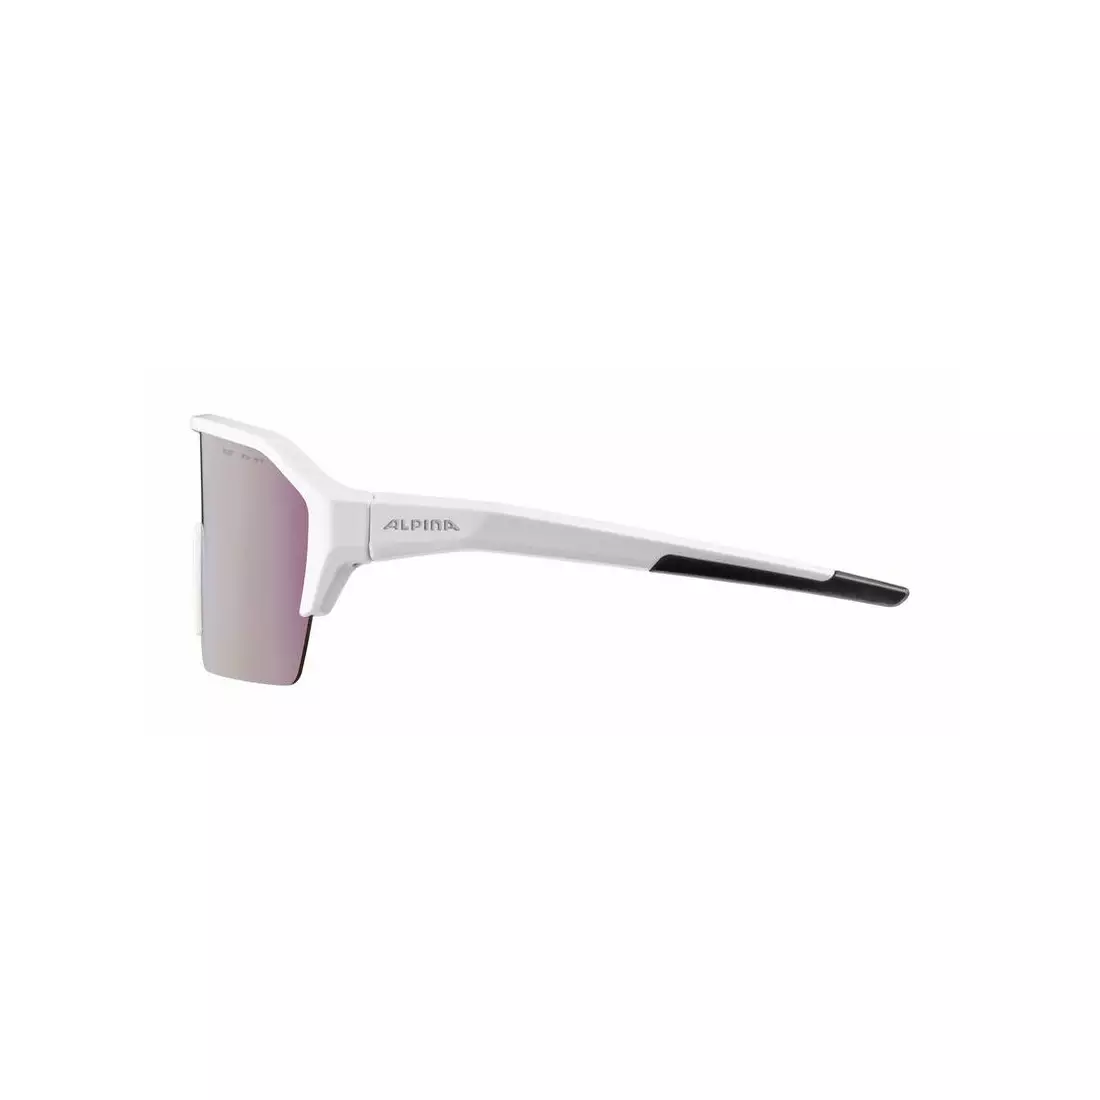 ALPINA sports glasses RAM HR HVLM+ BLUE MIRROR S1-3 white matt A8674211